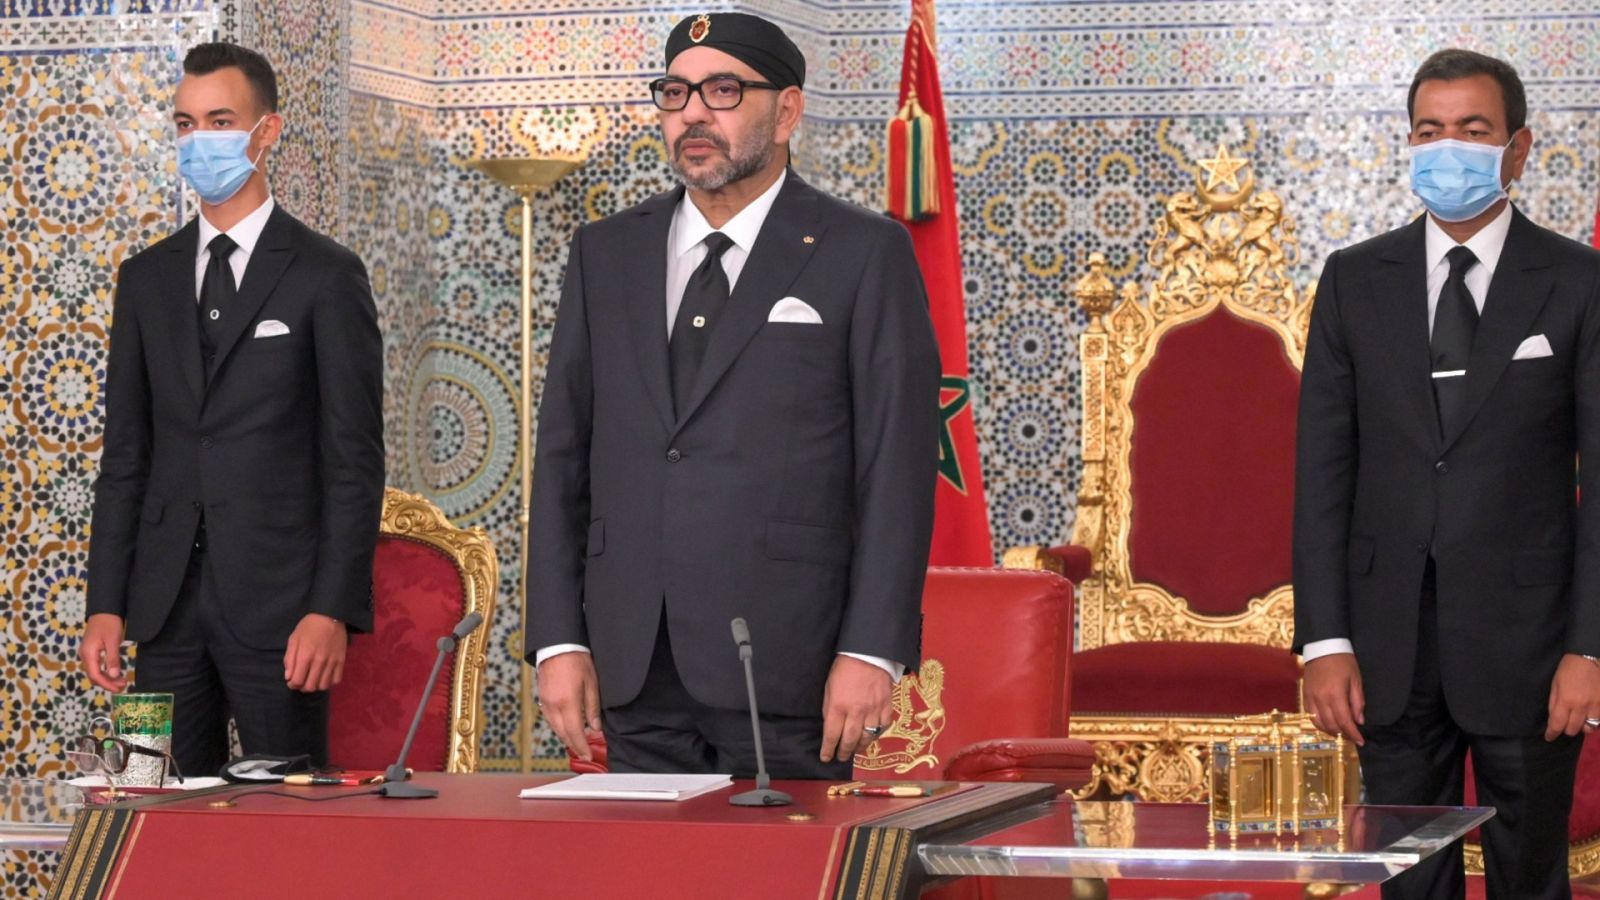 El rey de Marruecos se dirige a la nación por primera vez desde que comenzó la pandemia - RTVE.es